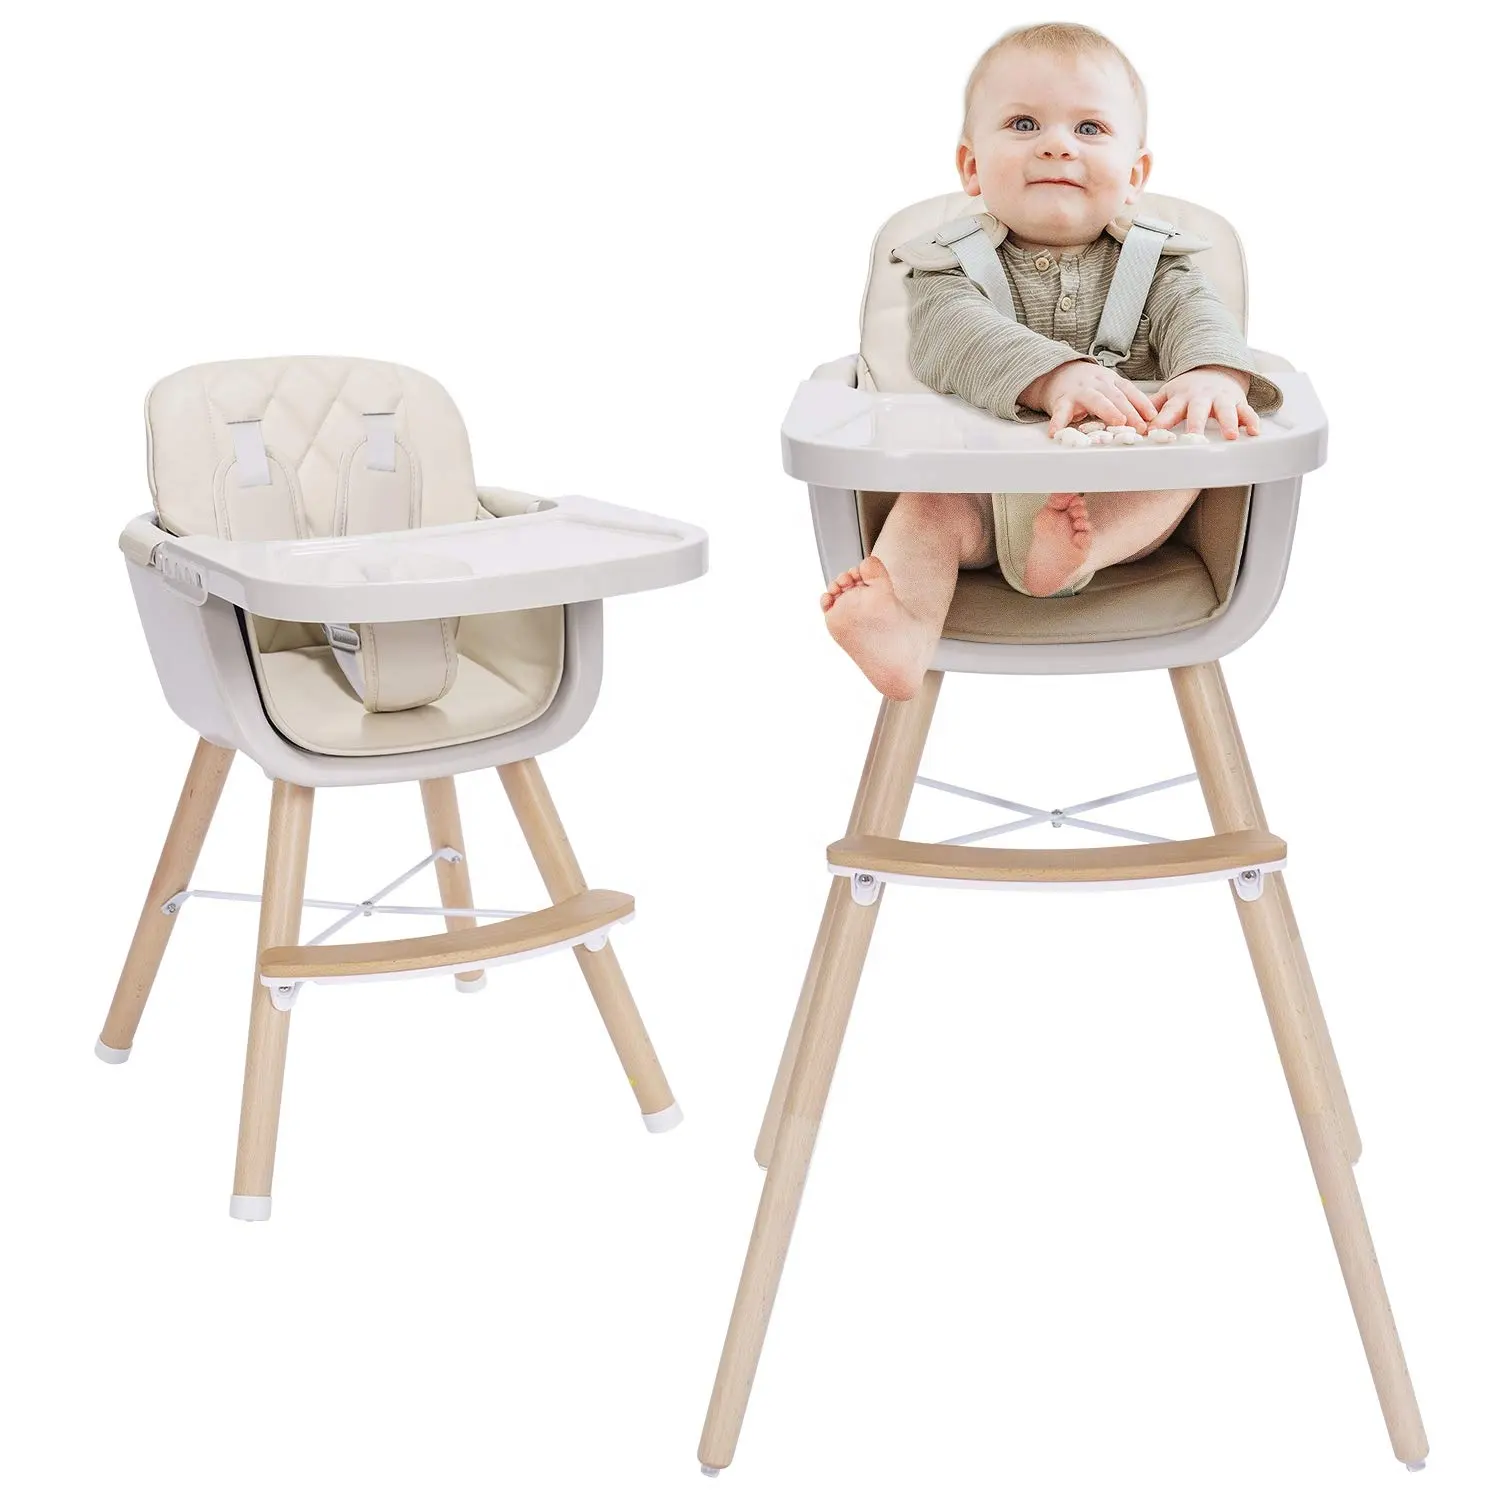 Cadeira de alimentação para bebês, nova cadeira alta para bebês personalizada, oem portátil, multifunção, cadeira de alimentação com rodas, pode ser movimentada e armazenada